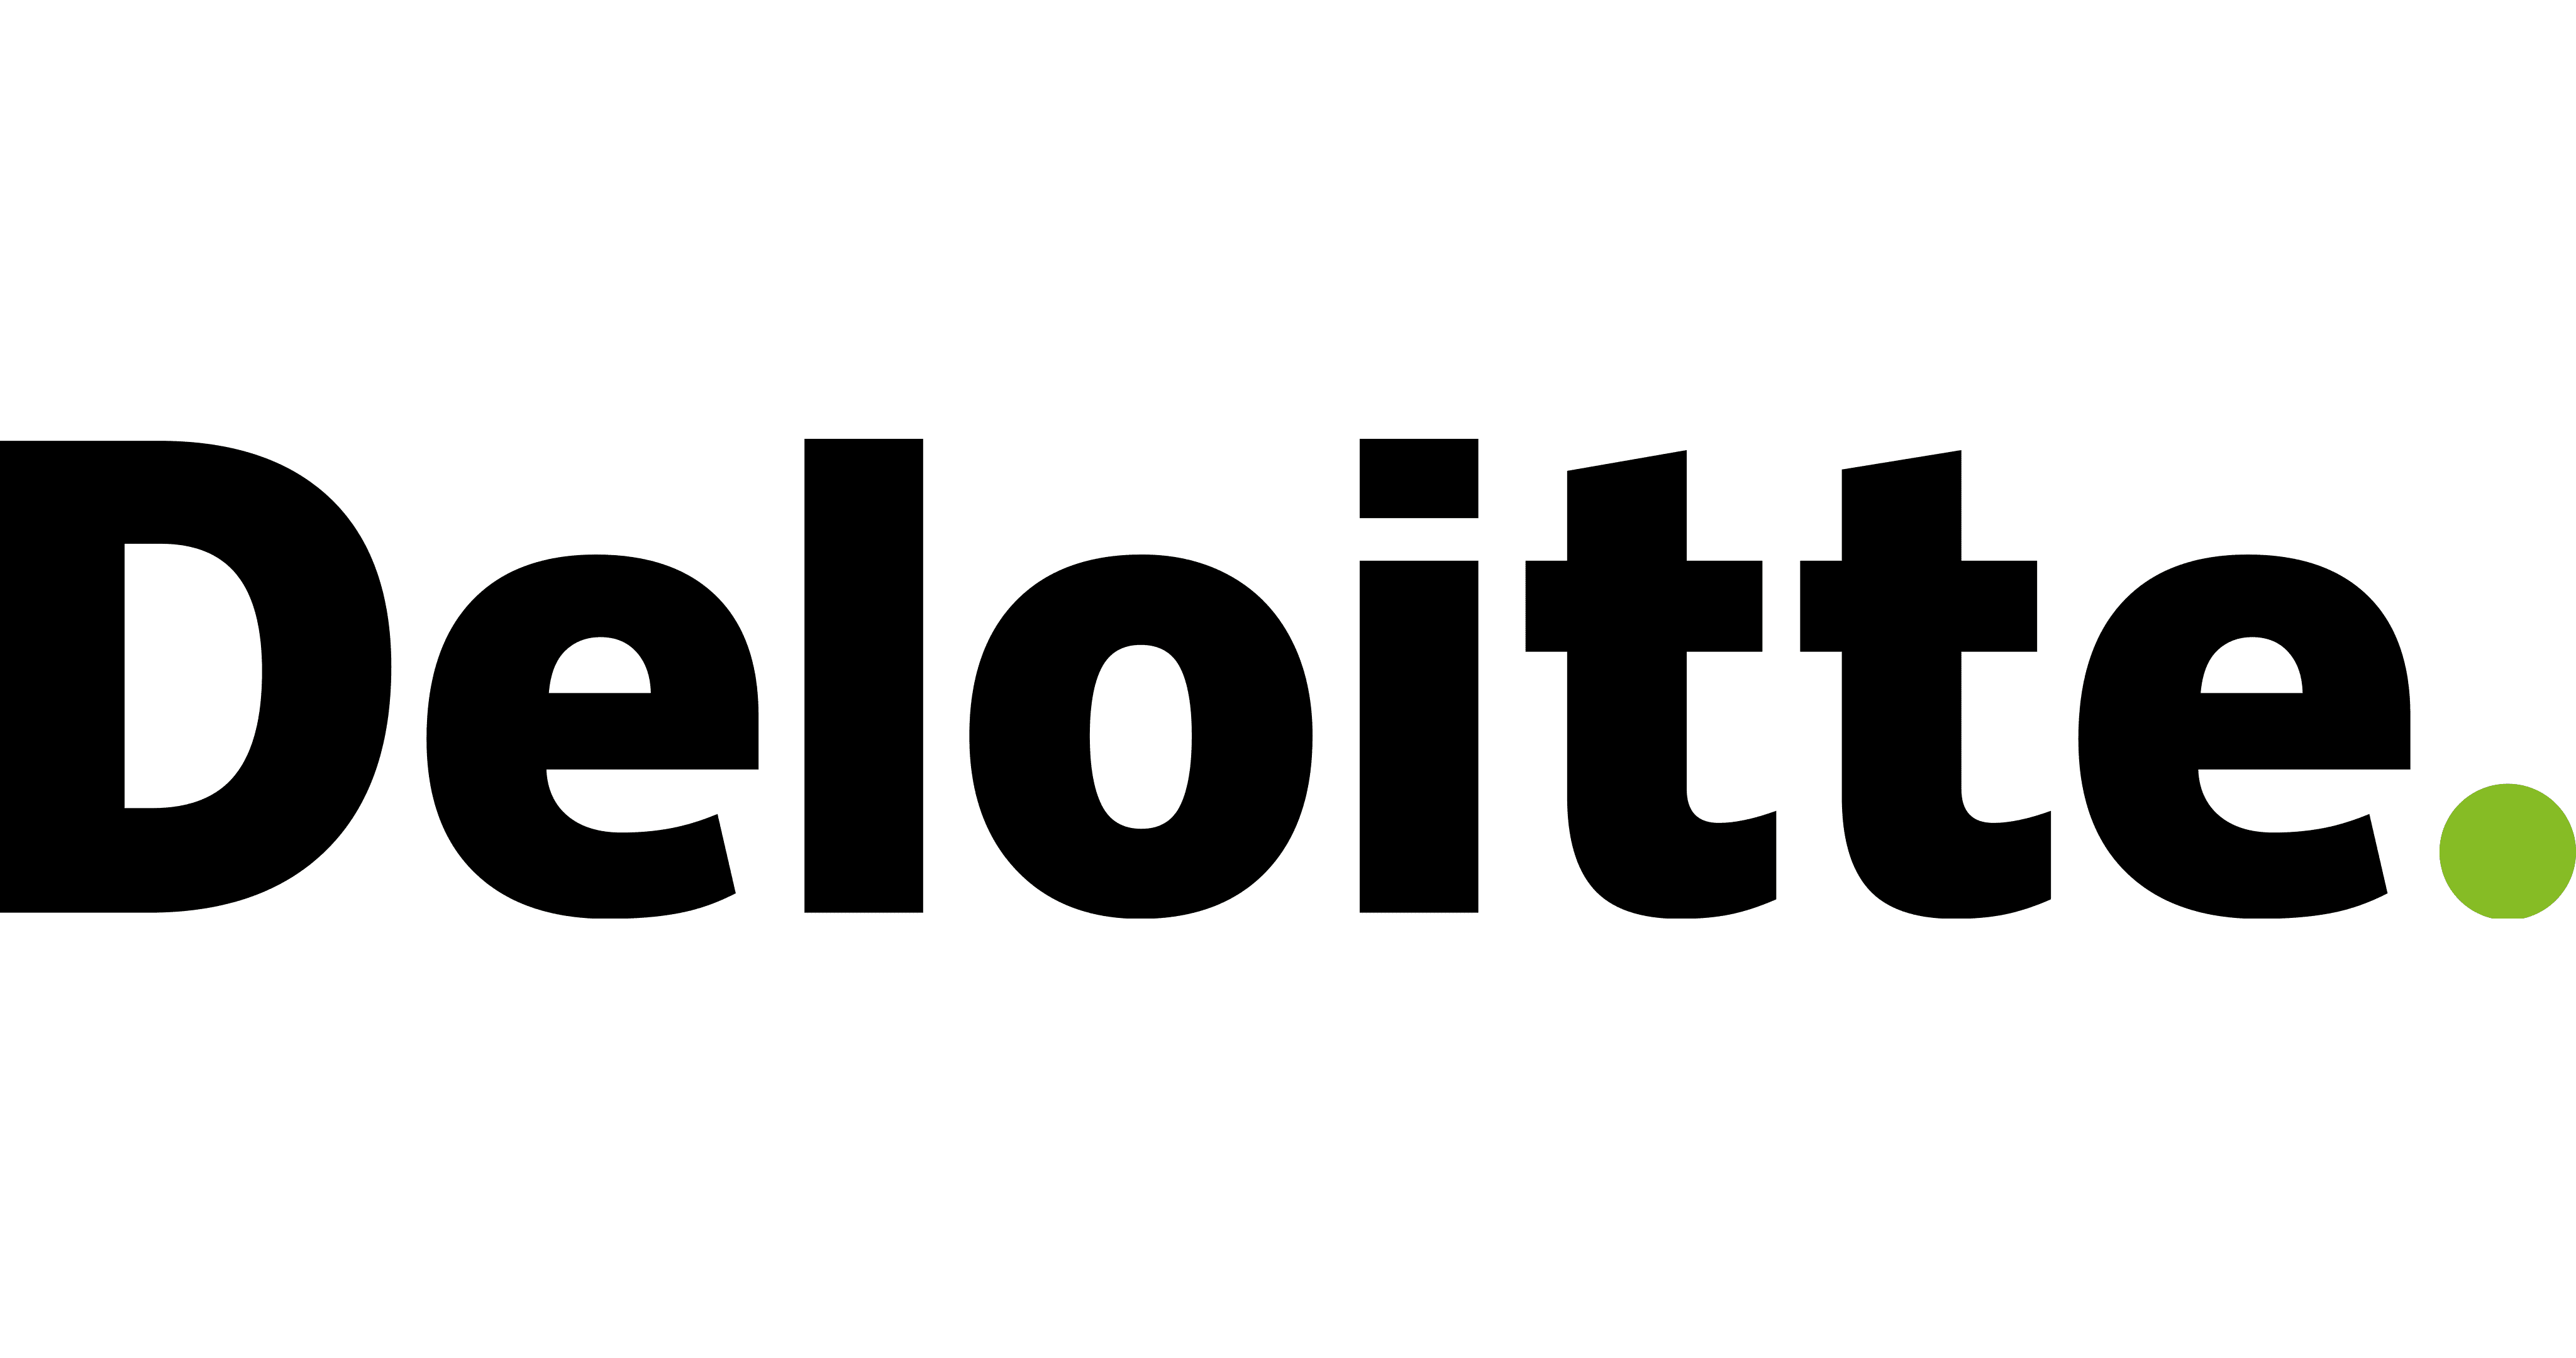 Deloitte Immersive Online Assessment